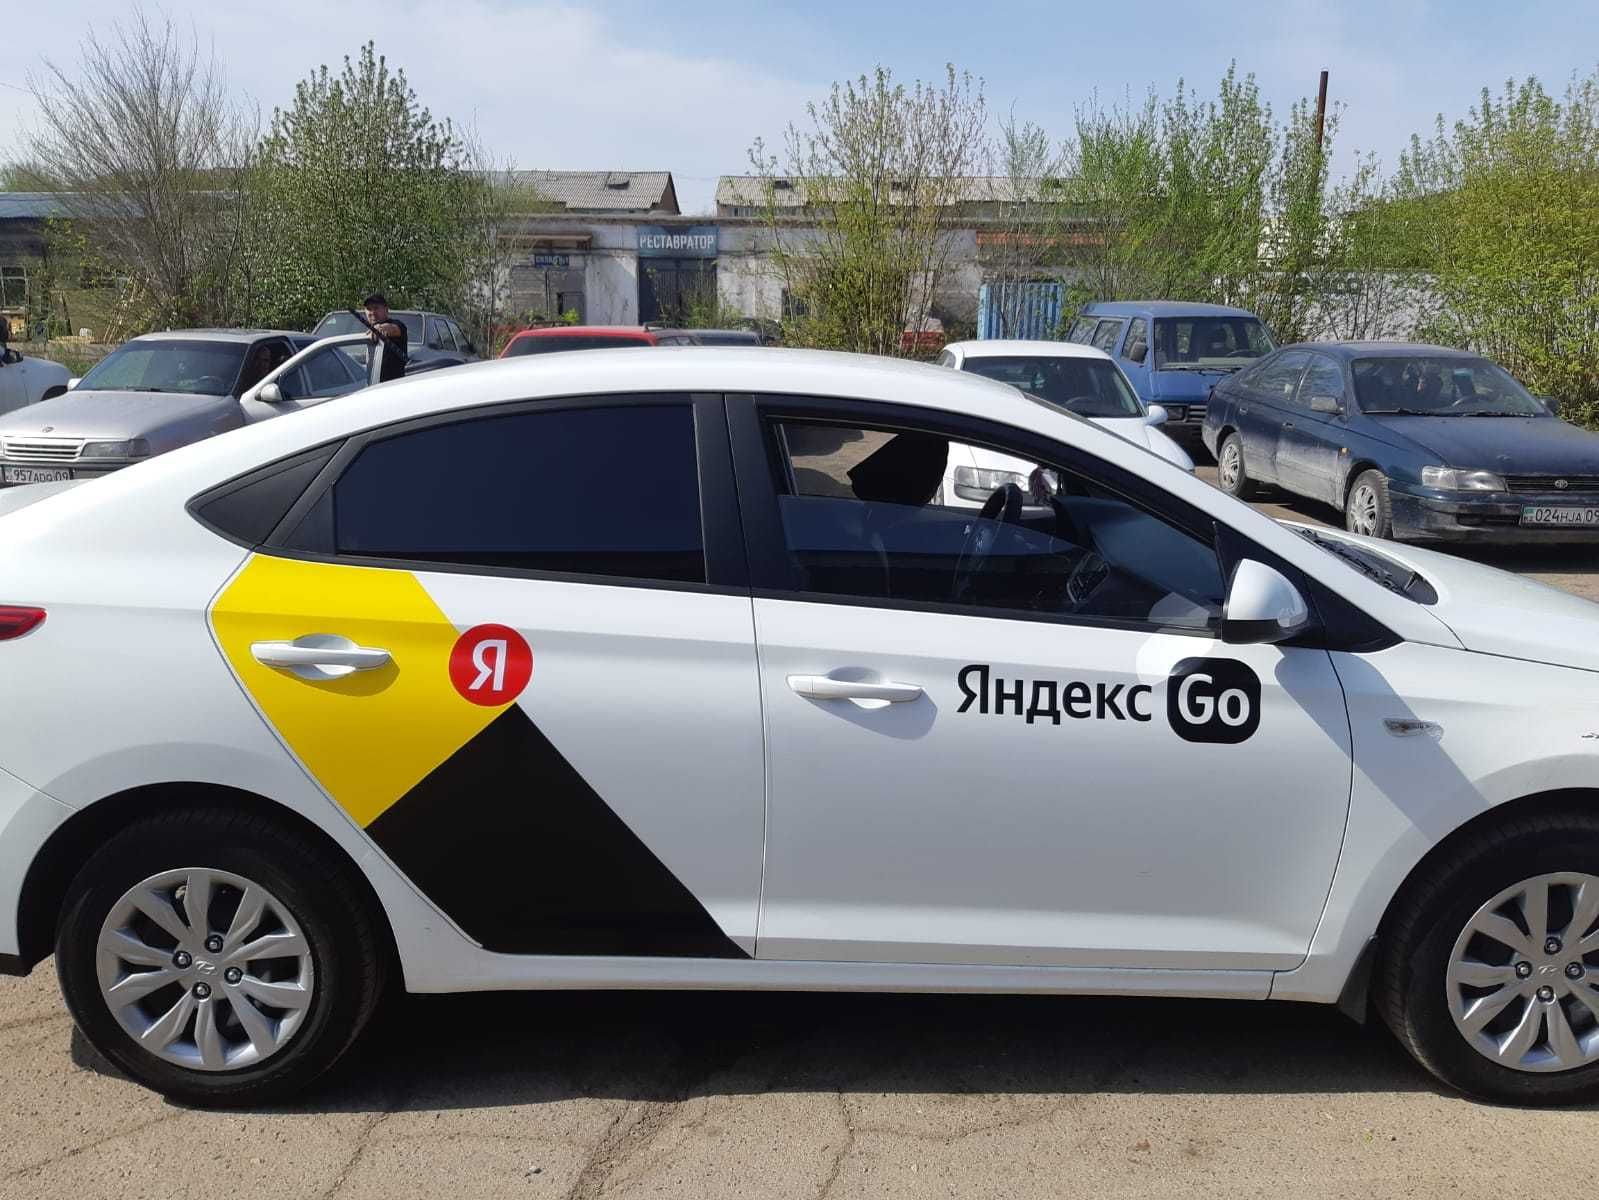 Брендирование авто Яндекс наклейки